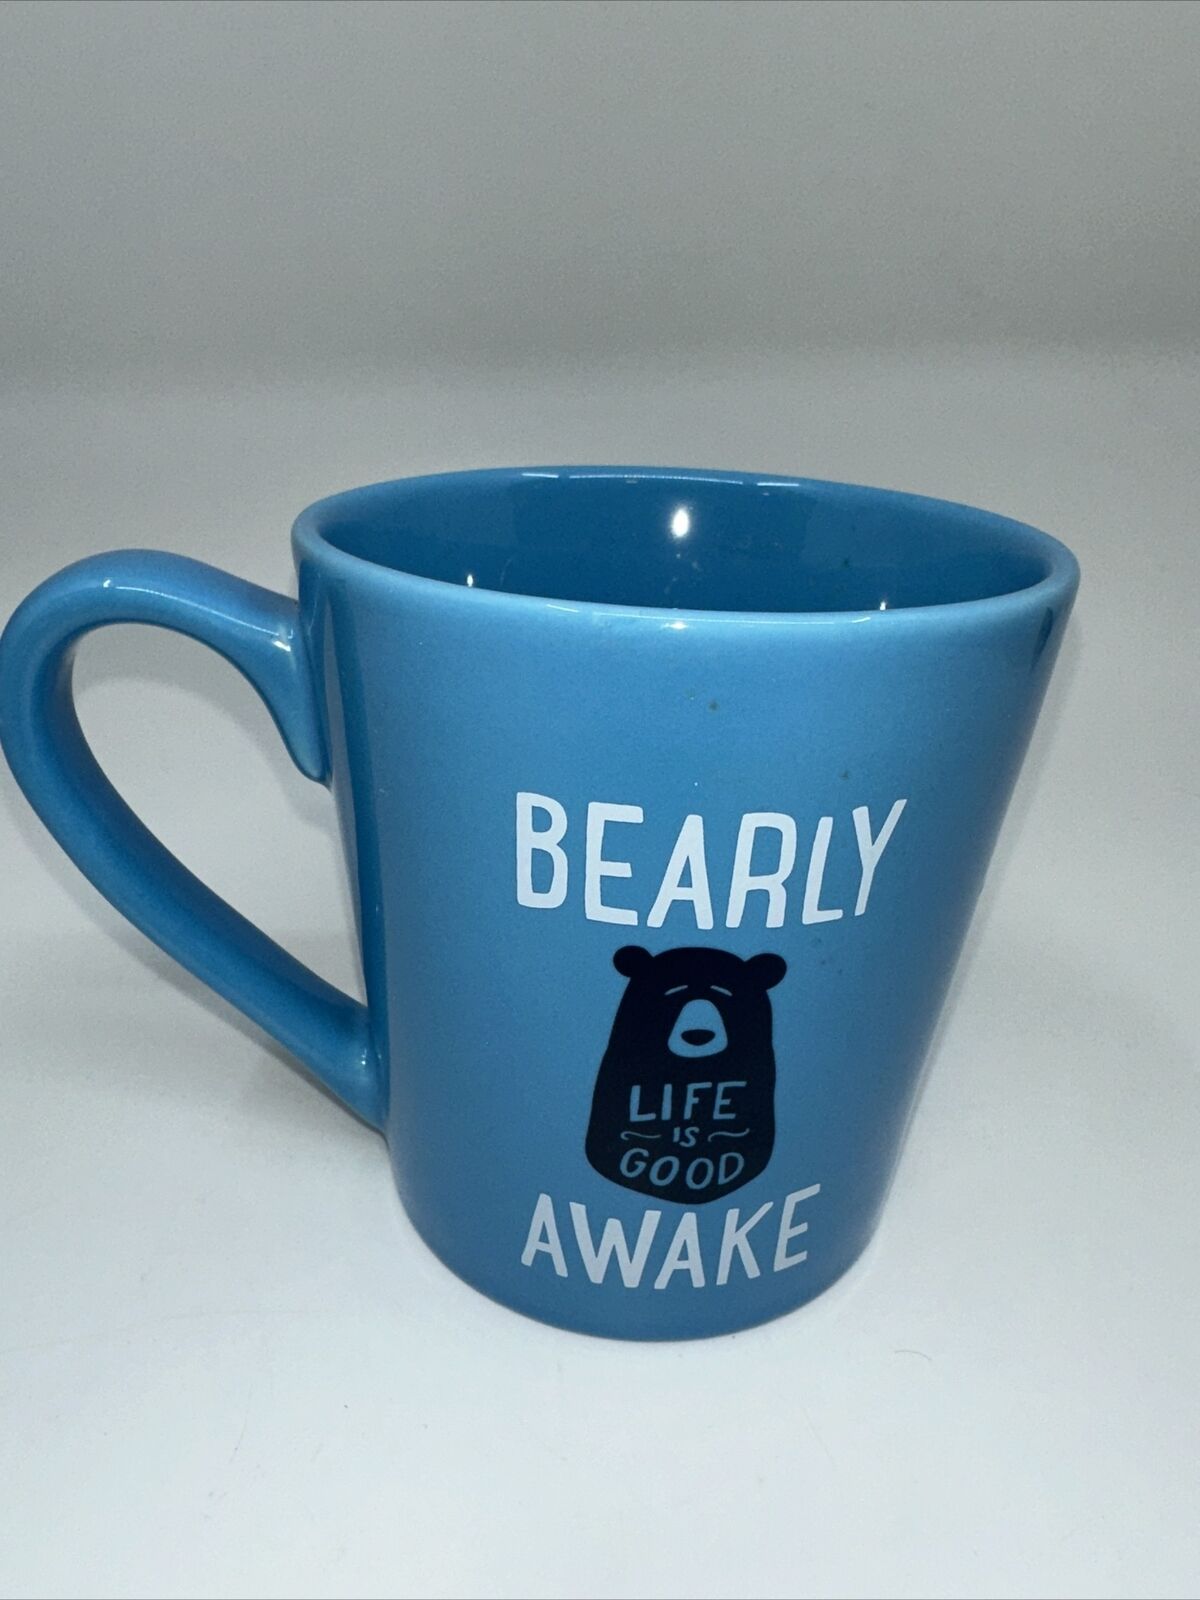 Life Is Good Mug Blue BEARLY AWAKE